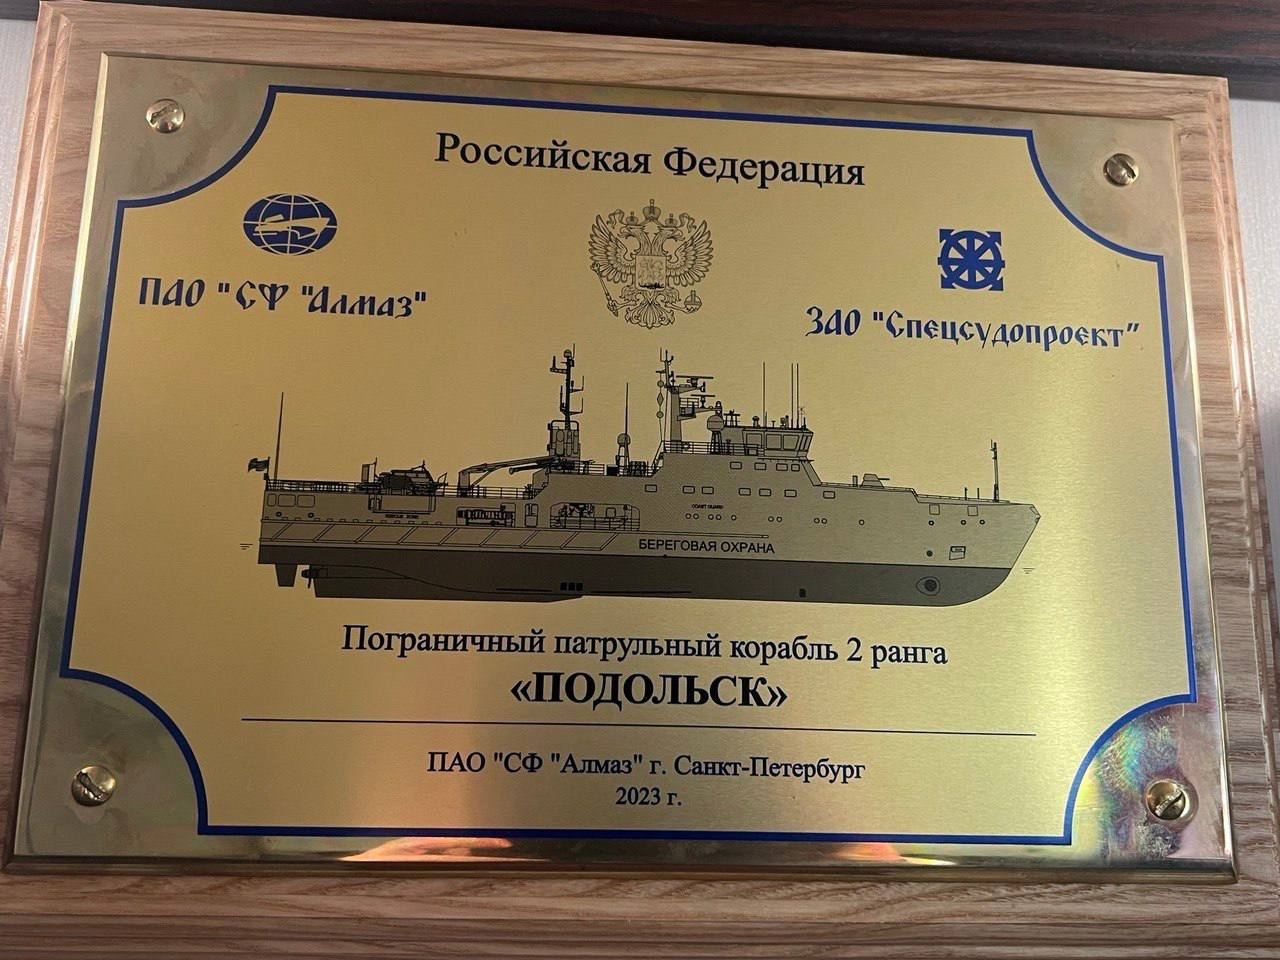 Новый пограничный корабль "Подольск" убыл на службу